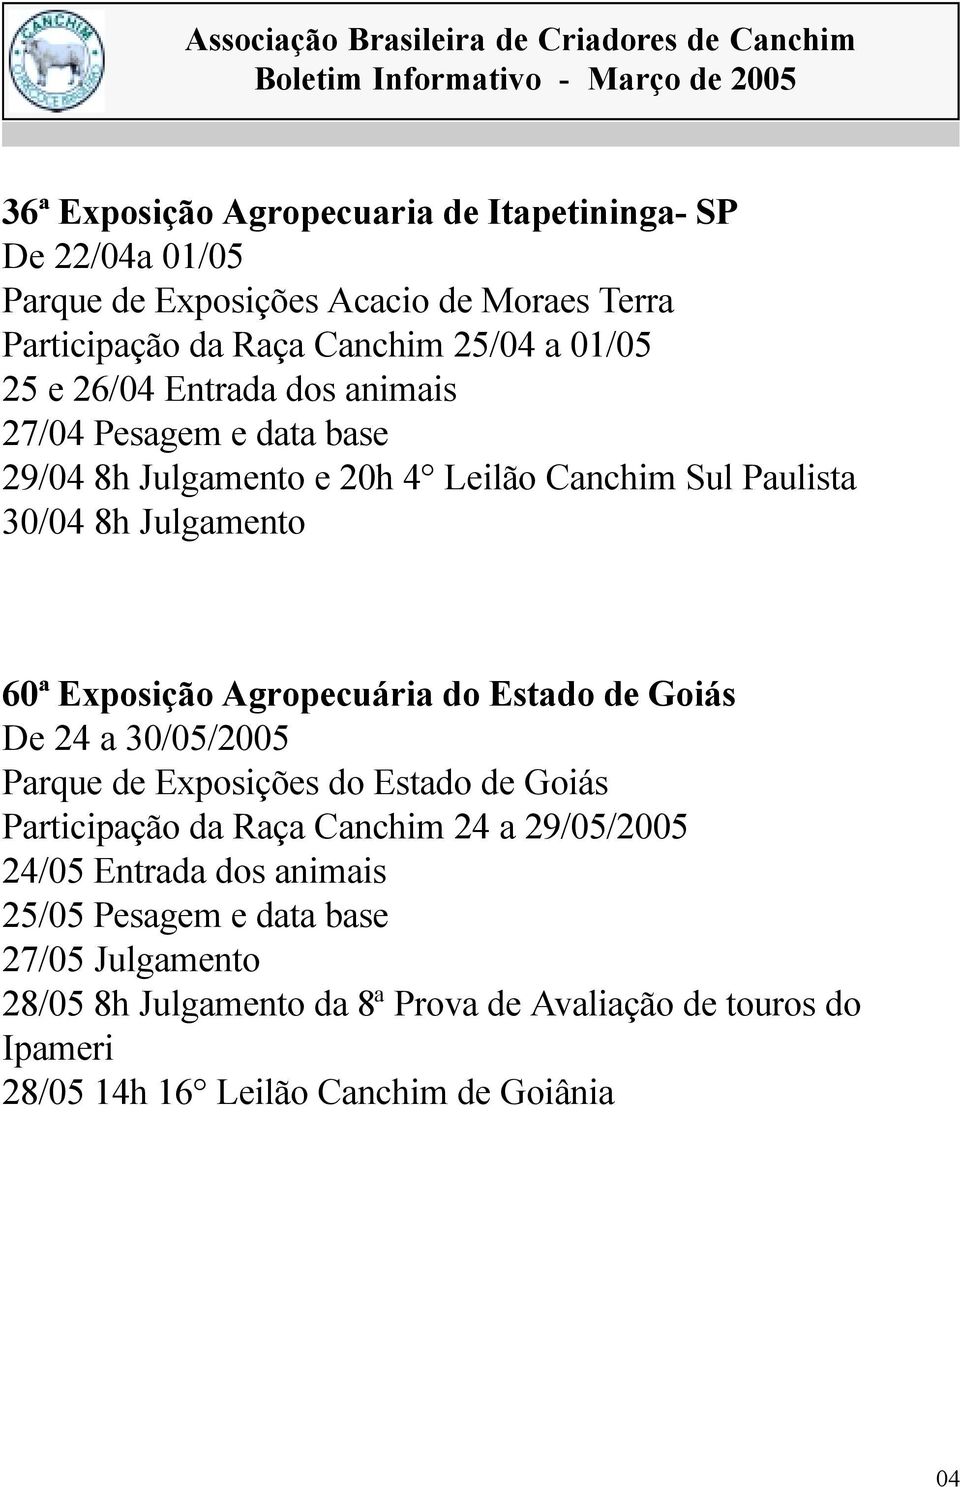 Agropecuária do Estado de Goiás De 24 a 30/05/2005 Parque de Exposições do Estado de Goiás Participação da Raça Canchim 24 a 29/05/2005 24/05 Entrada